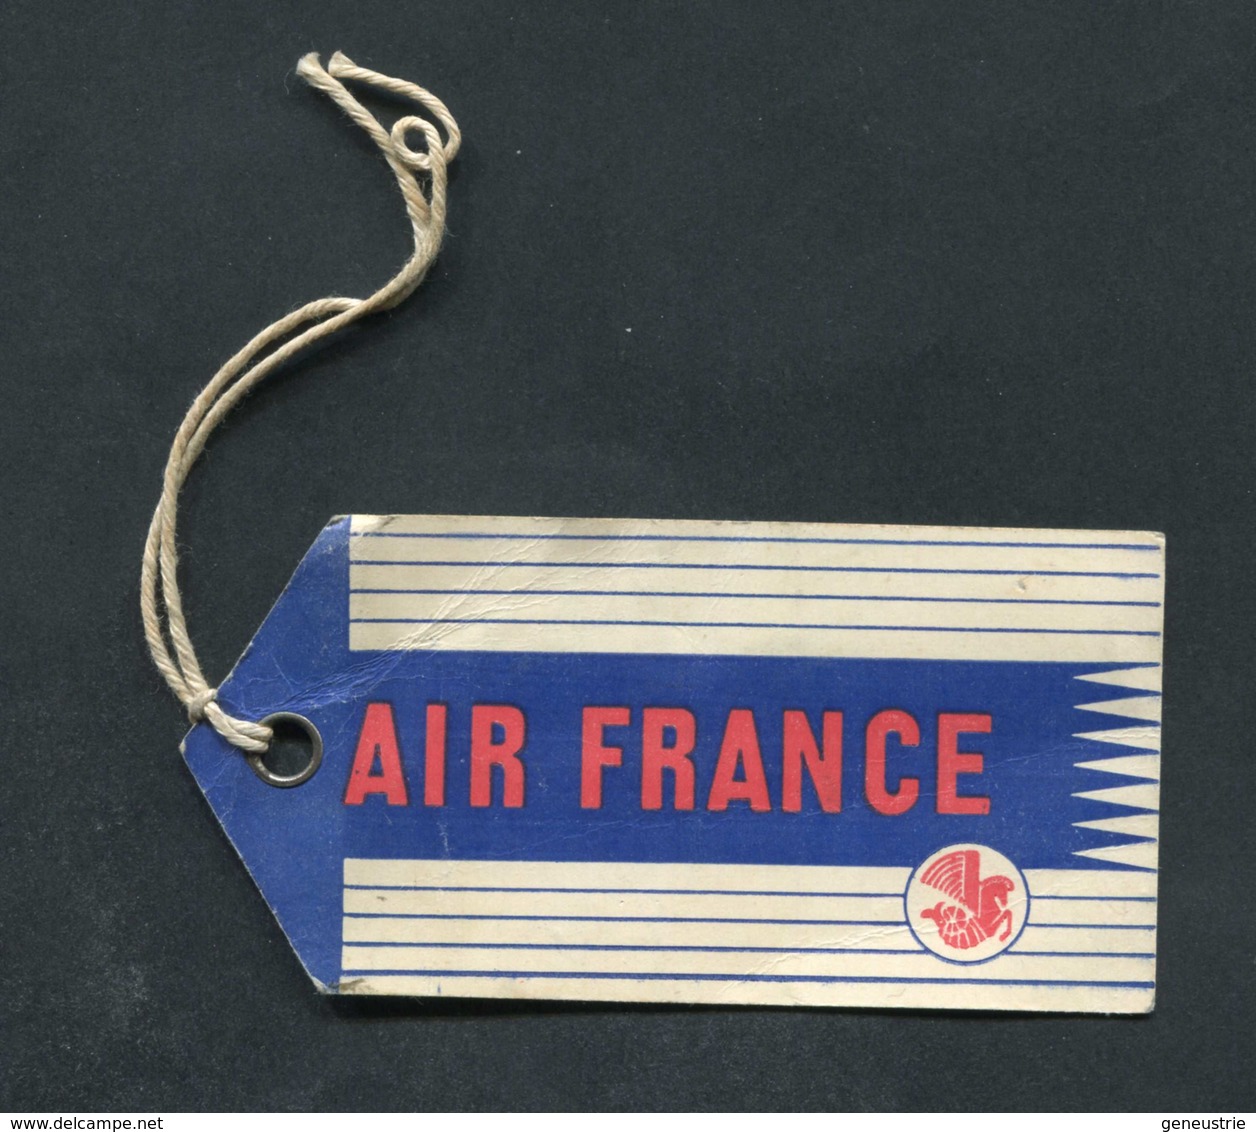 Etiquette D'identification De Bagages 1959 "Air France" Aviation Commercial - Avion - Étiquettes à Bagages